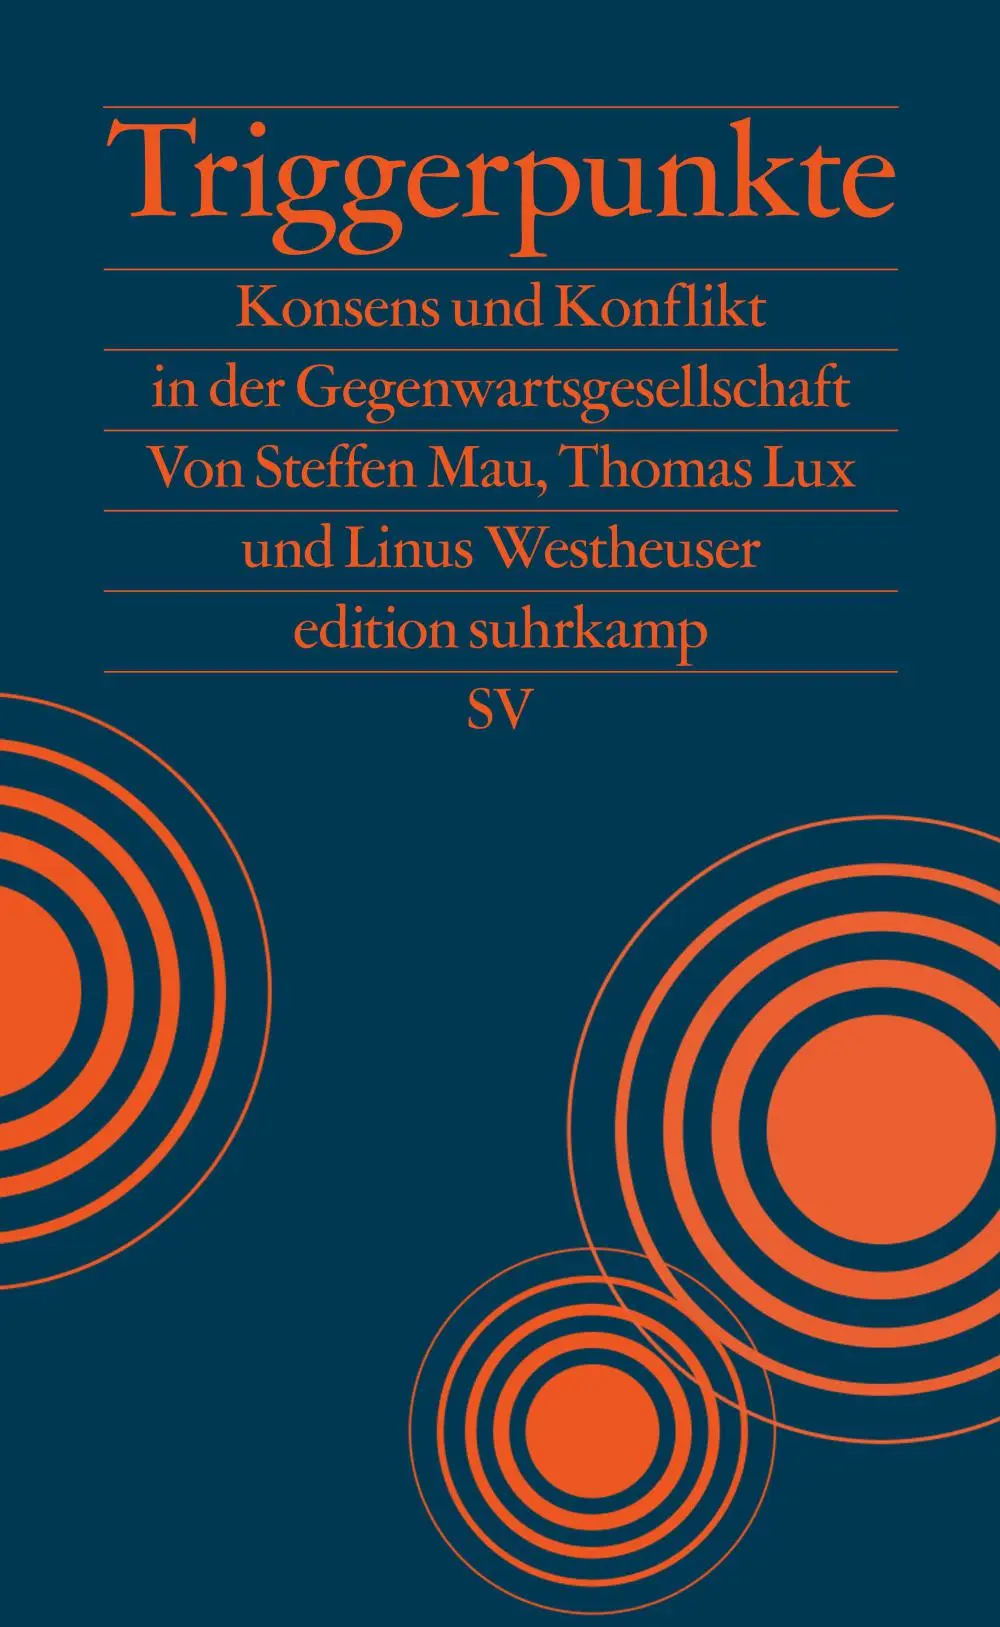 Steffen Mau, Thomas Lux, Liinus Westheuser: Triggerpunkte.